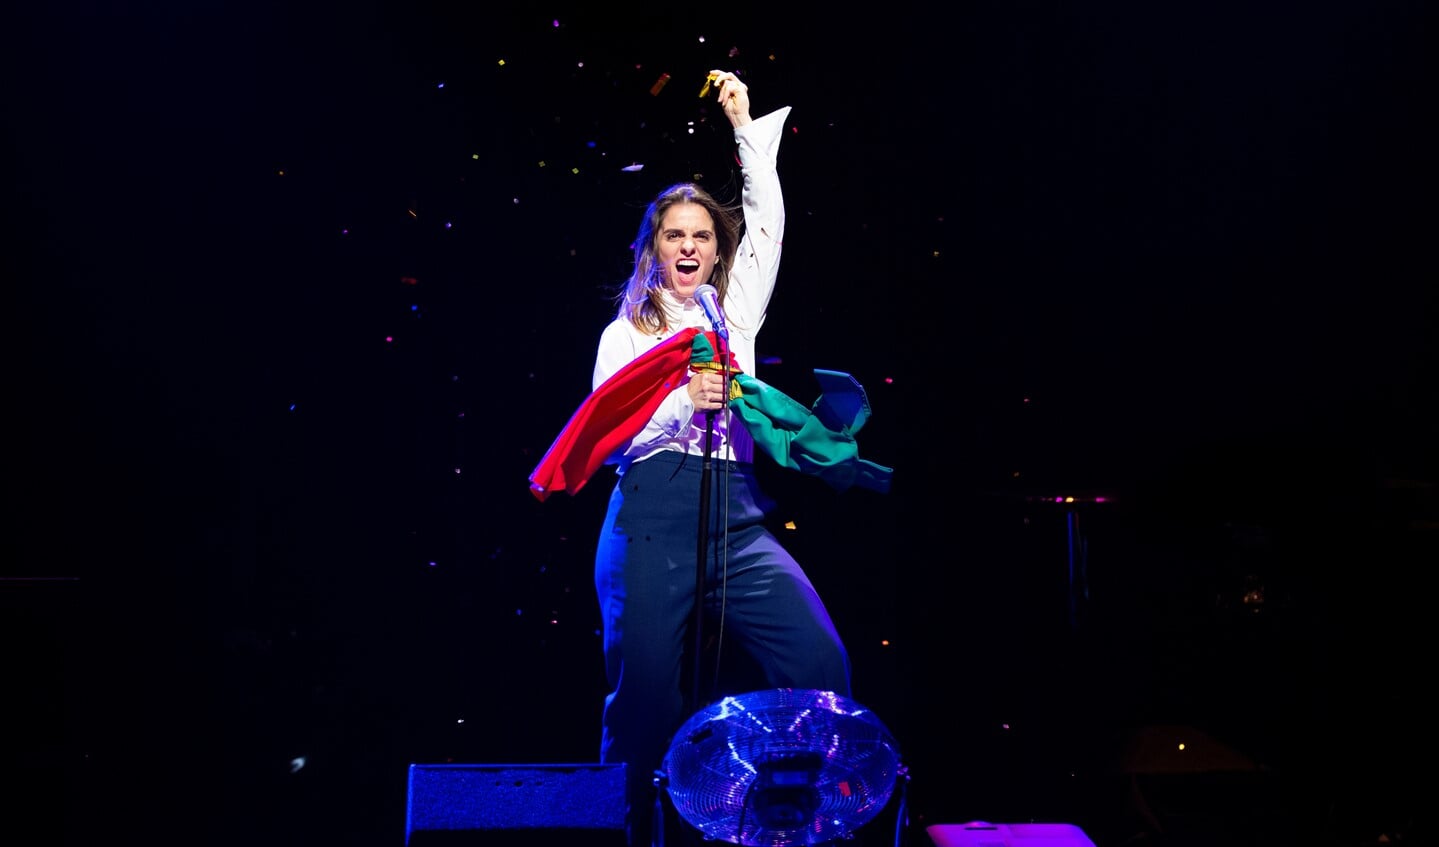 Rosa da Silva Solo in het Stadstheater. Foto: Anne van Zandwijk